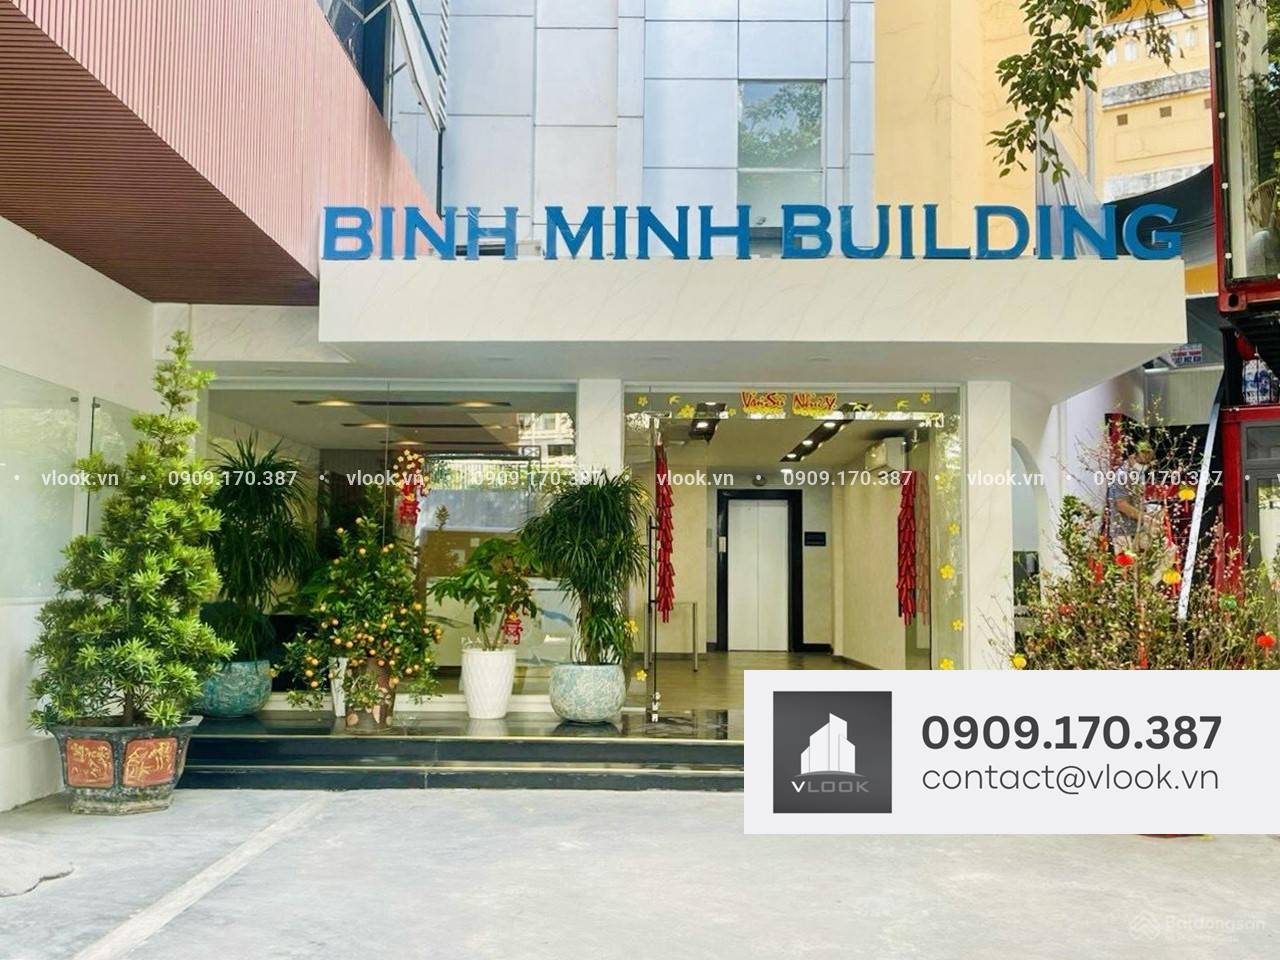 Cao ốc cho thuê văn phòng Bình Minh Building, Thi Sách, Quận 1 - vlook.vn